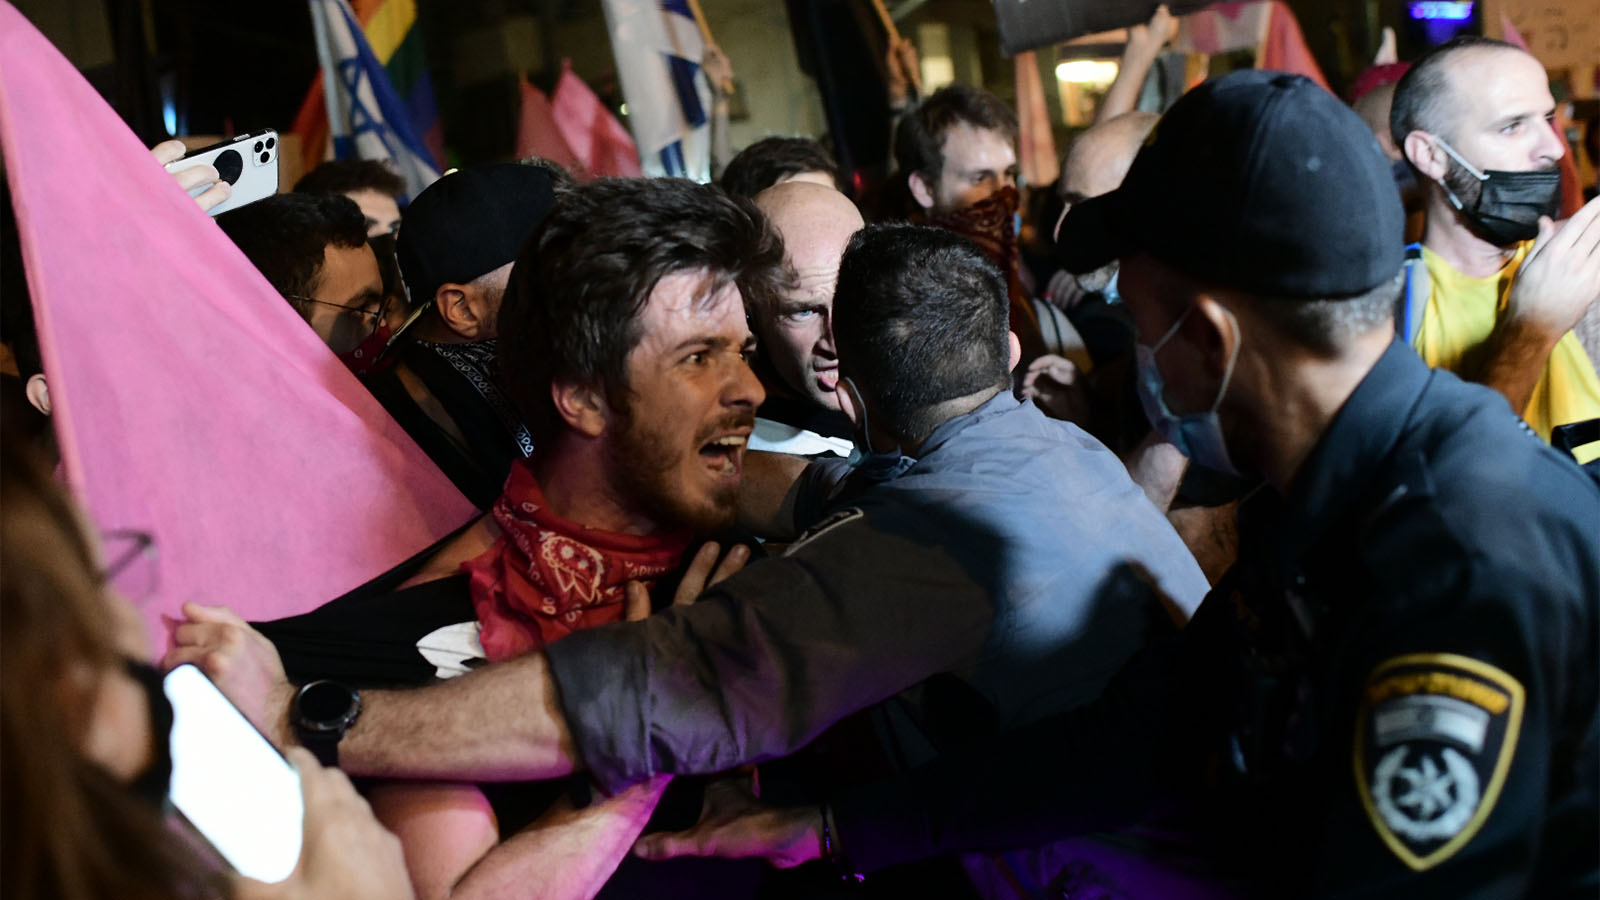 עימותים בין מפגינים לשוטרים בהפגנות מחאה נגד ראש הממשלה בנימין נתניהו, כיכר הבימה בתל אביב, 10 באוקטובר 2020 (צילום: תומר נויברג, פלאש 90)